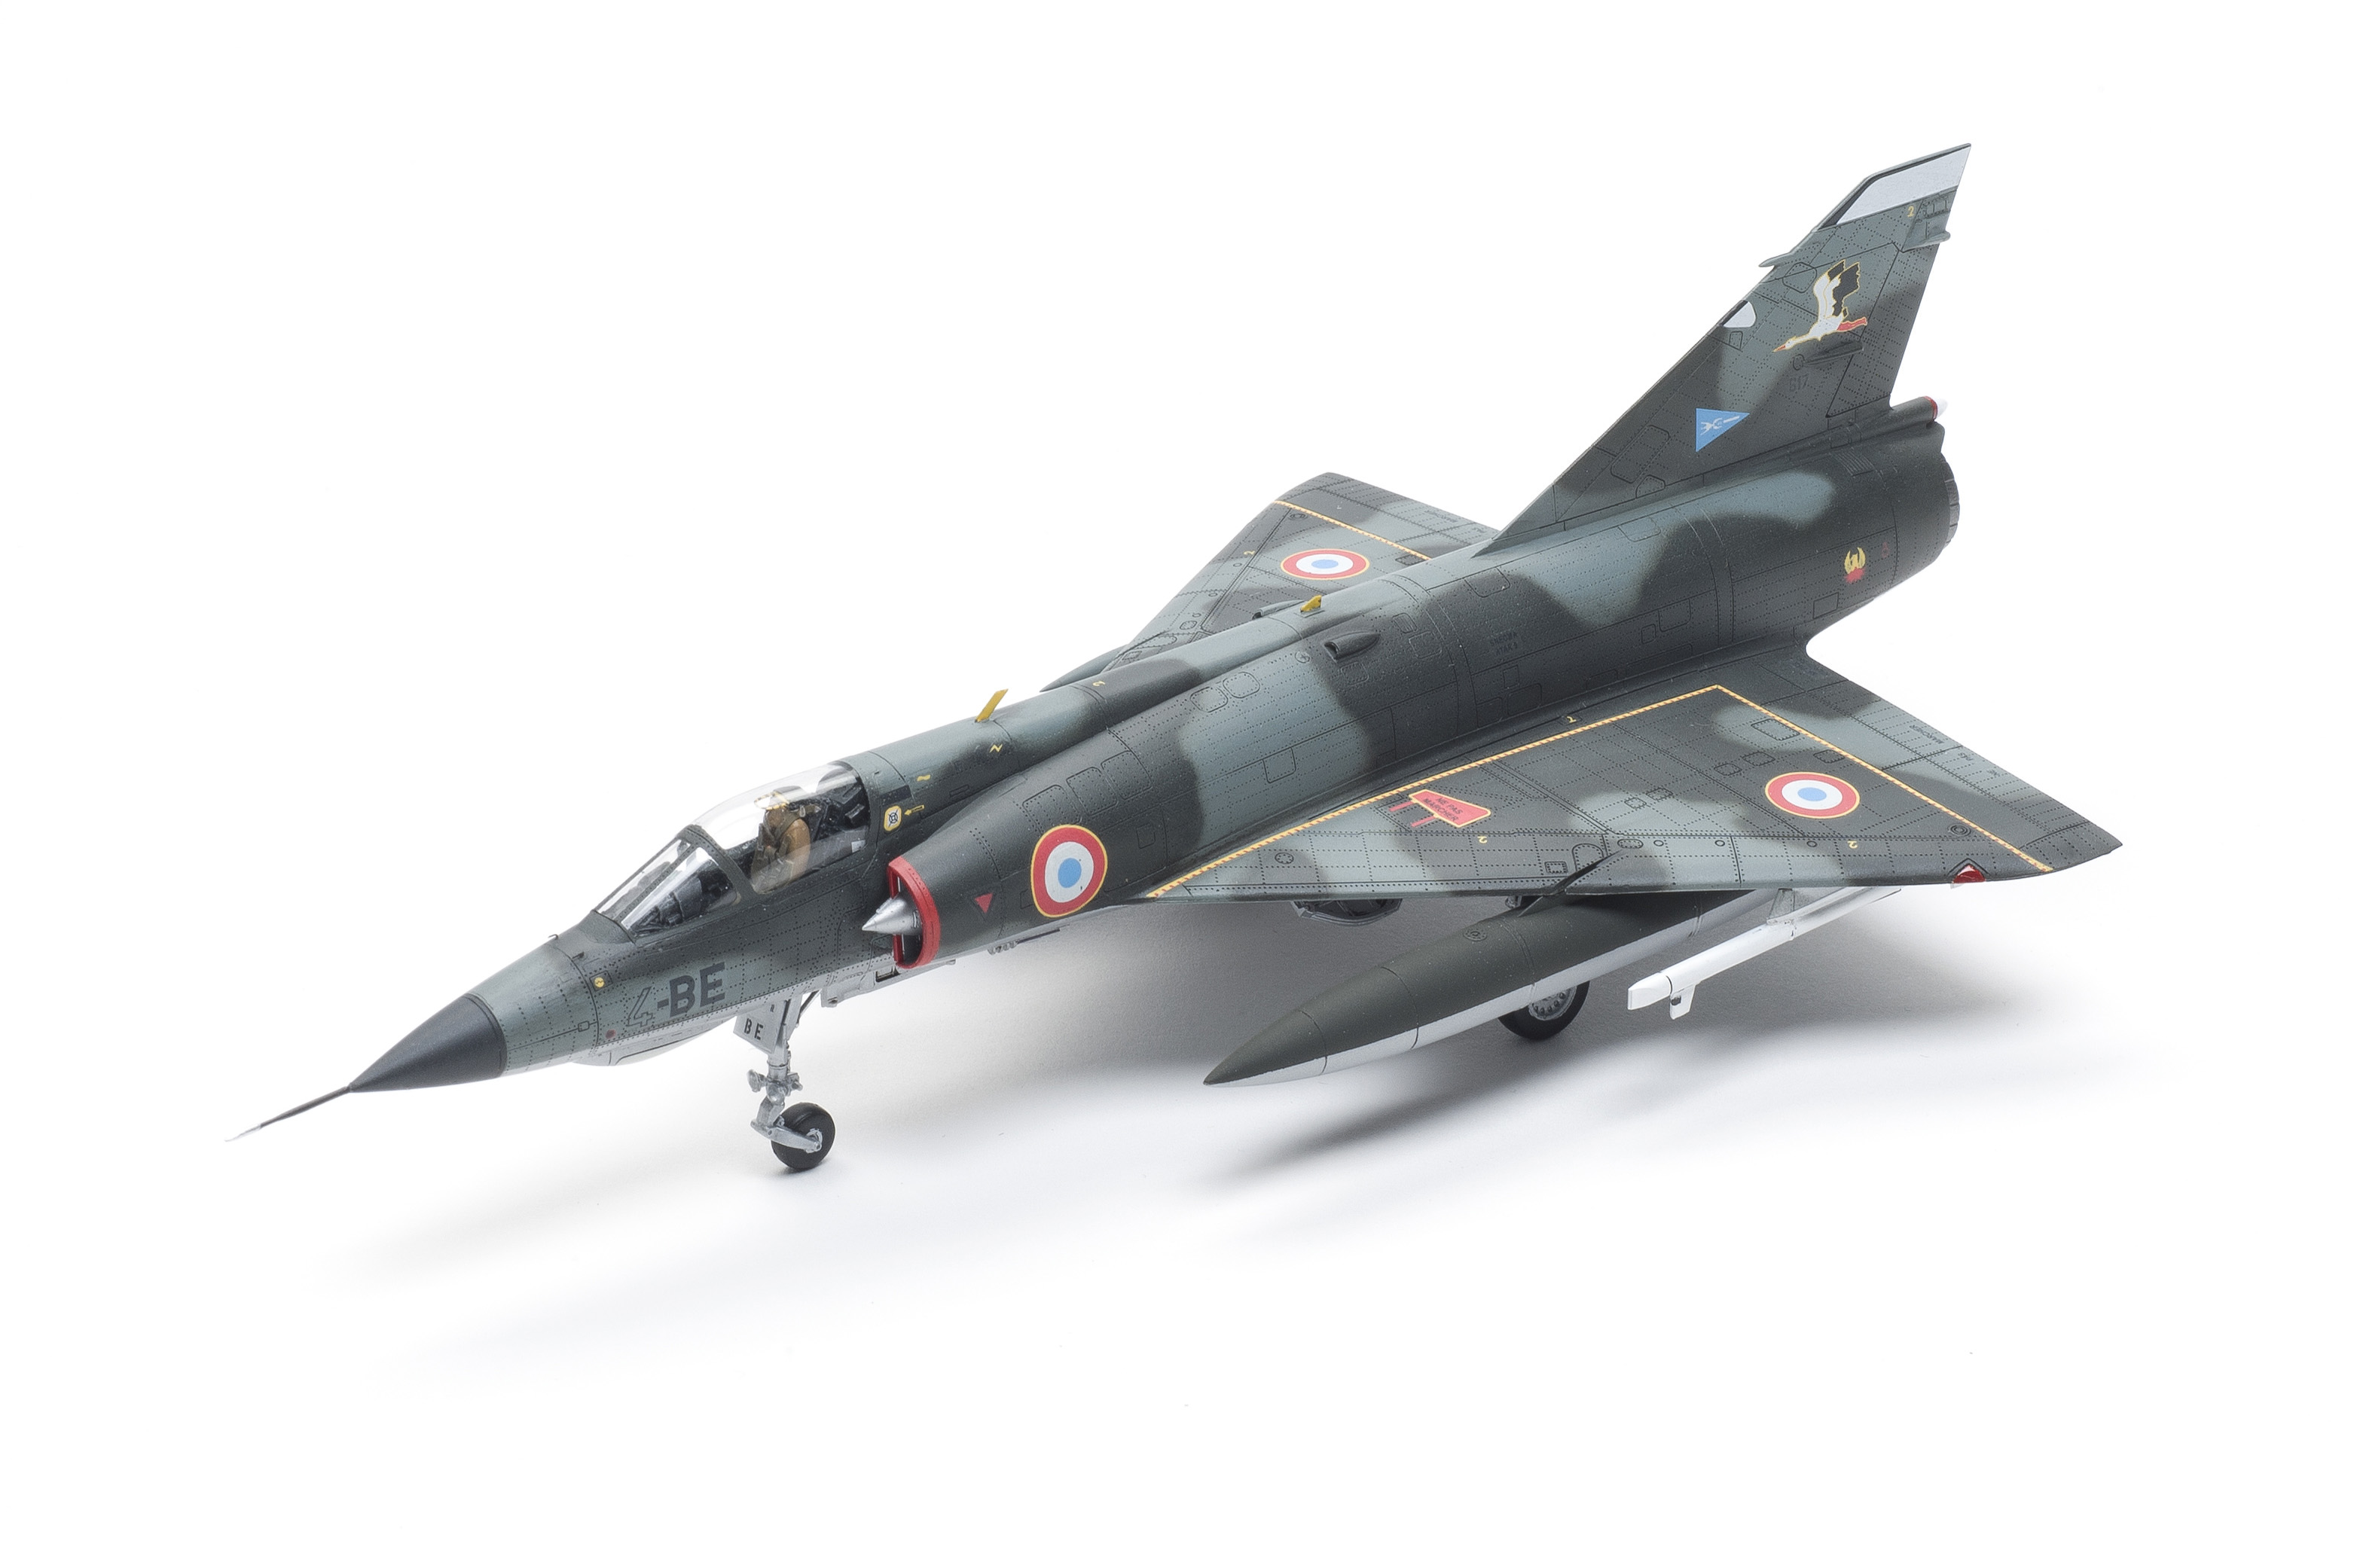 MODELSVIT 72060 1:72nd échelle Dassault Mirage III nouvelle version